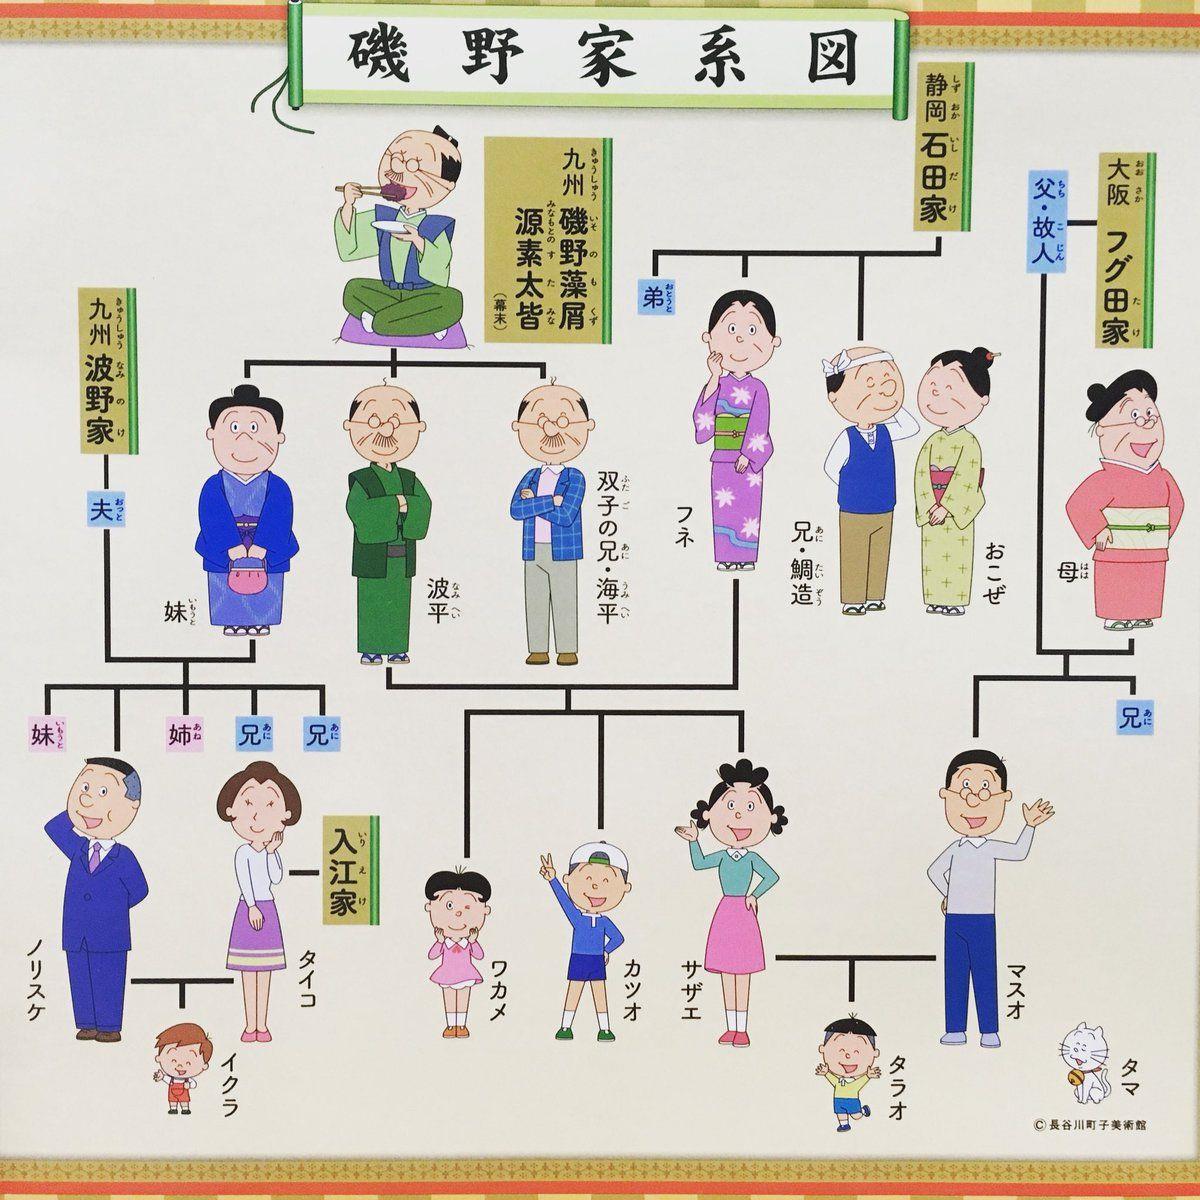 サザエさん 家系図と現在の年齢設定は 幻キャラのフグタヒトデも Sugarcode